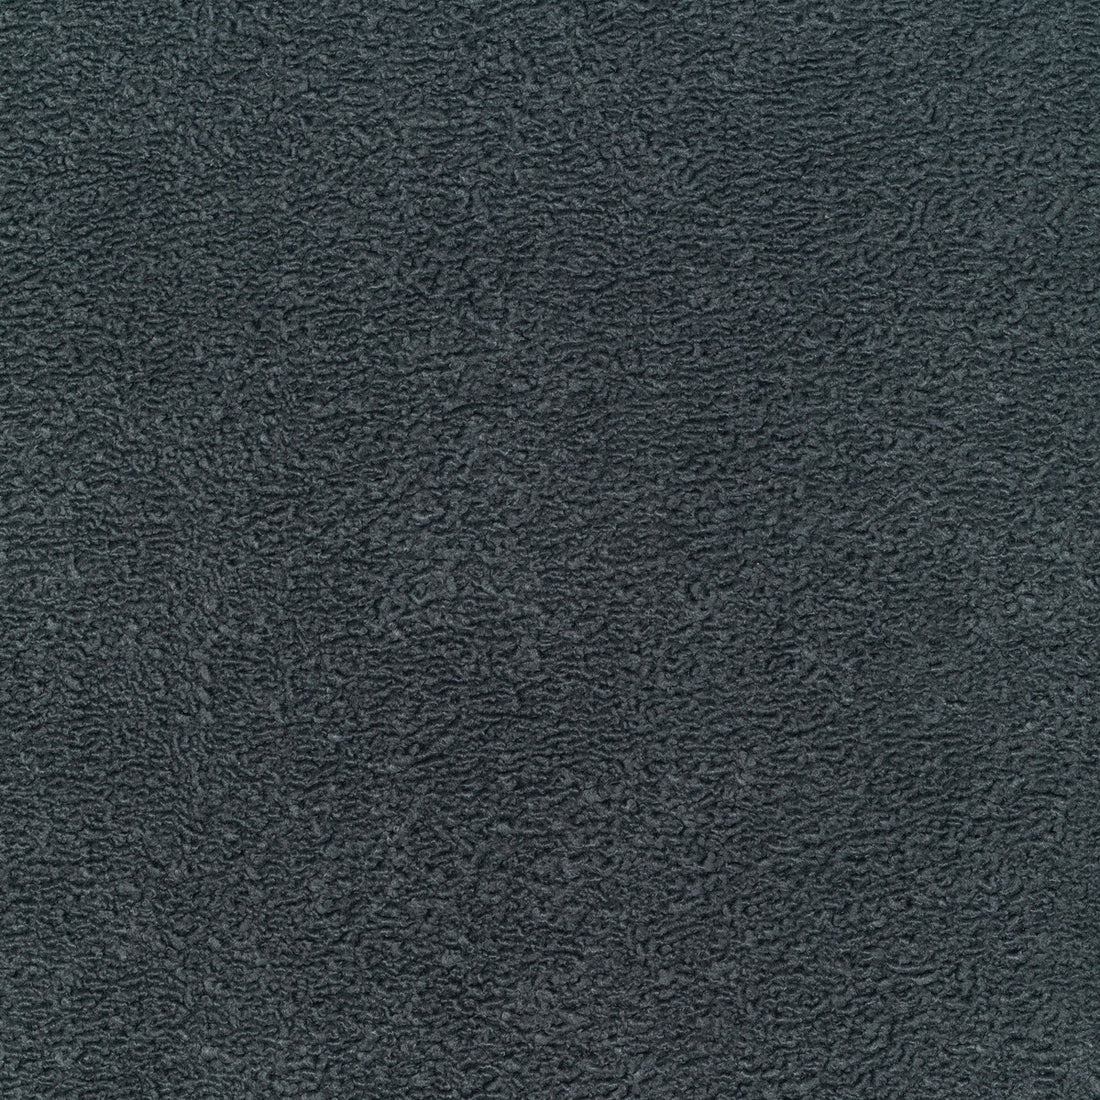 Kravet Basic fabric in 35310-52 color - pattern 35310.52.0 - by Kravet Basics